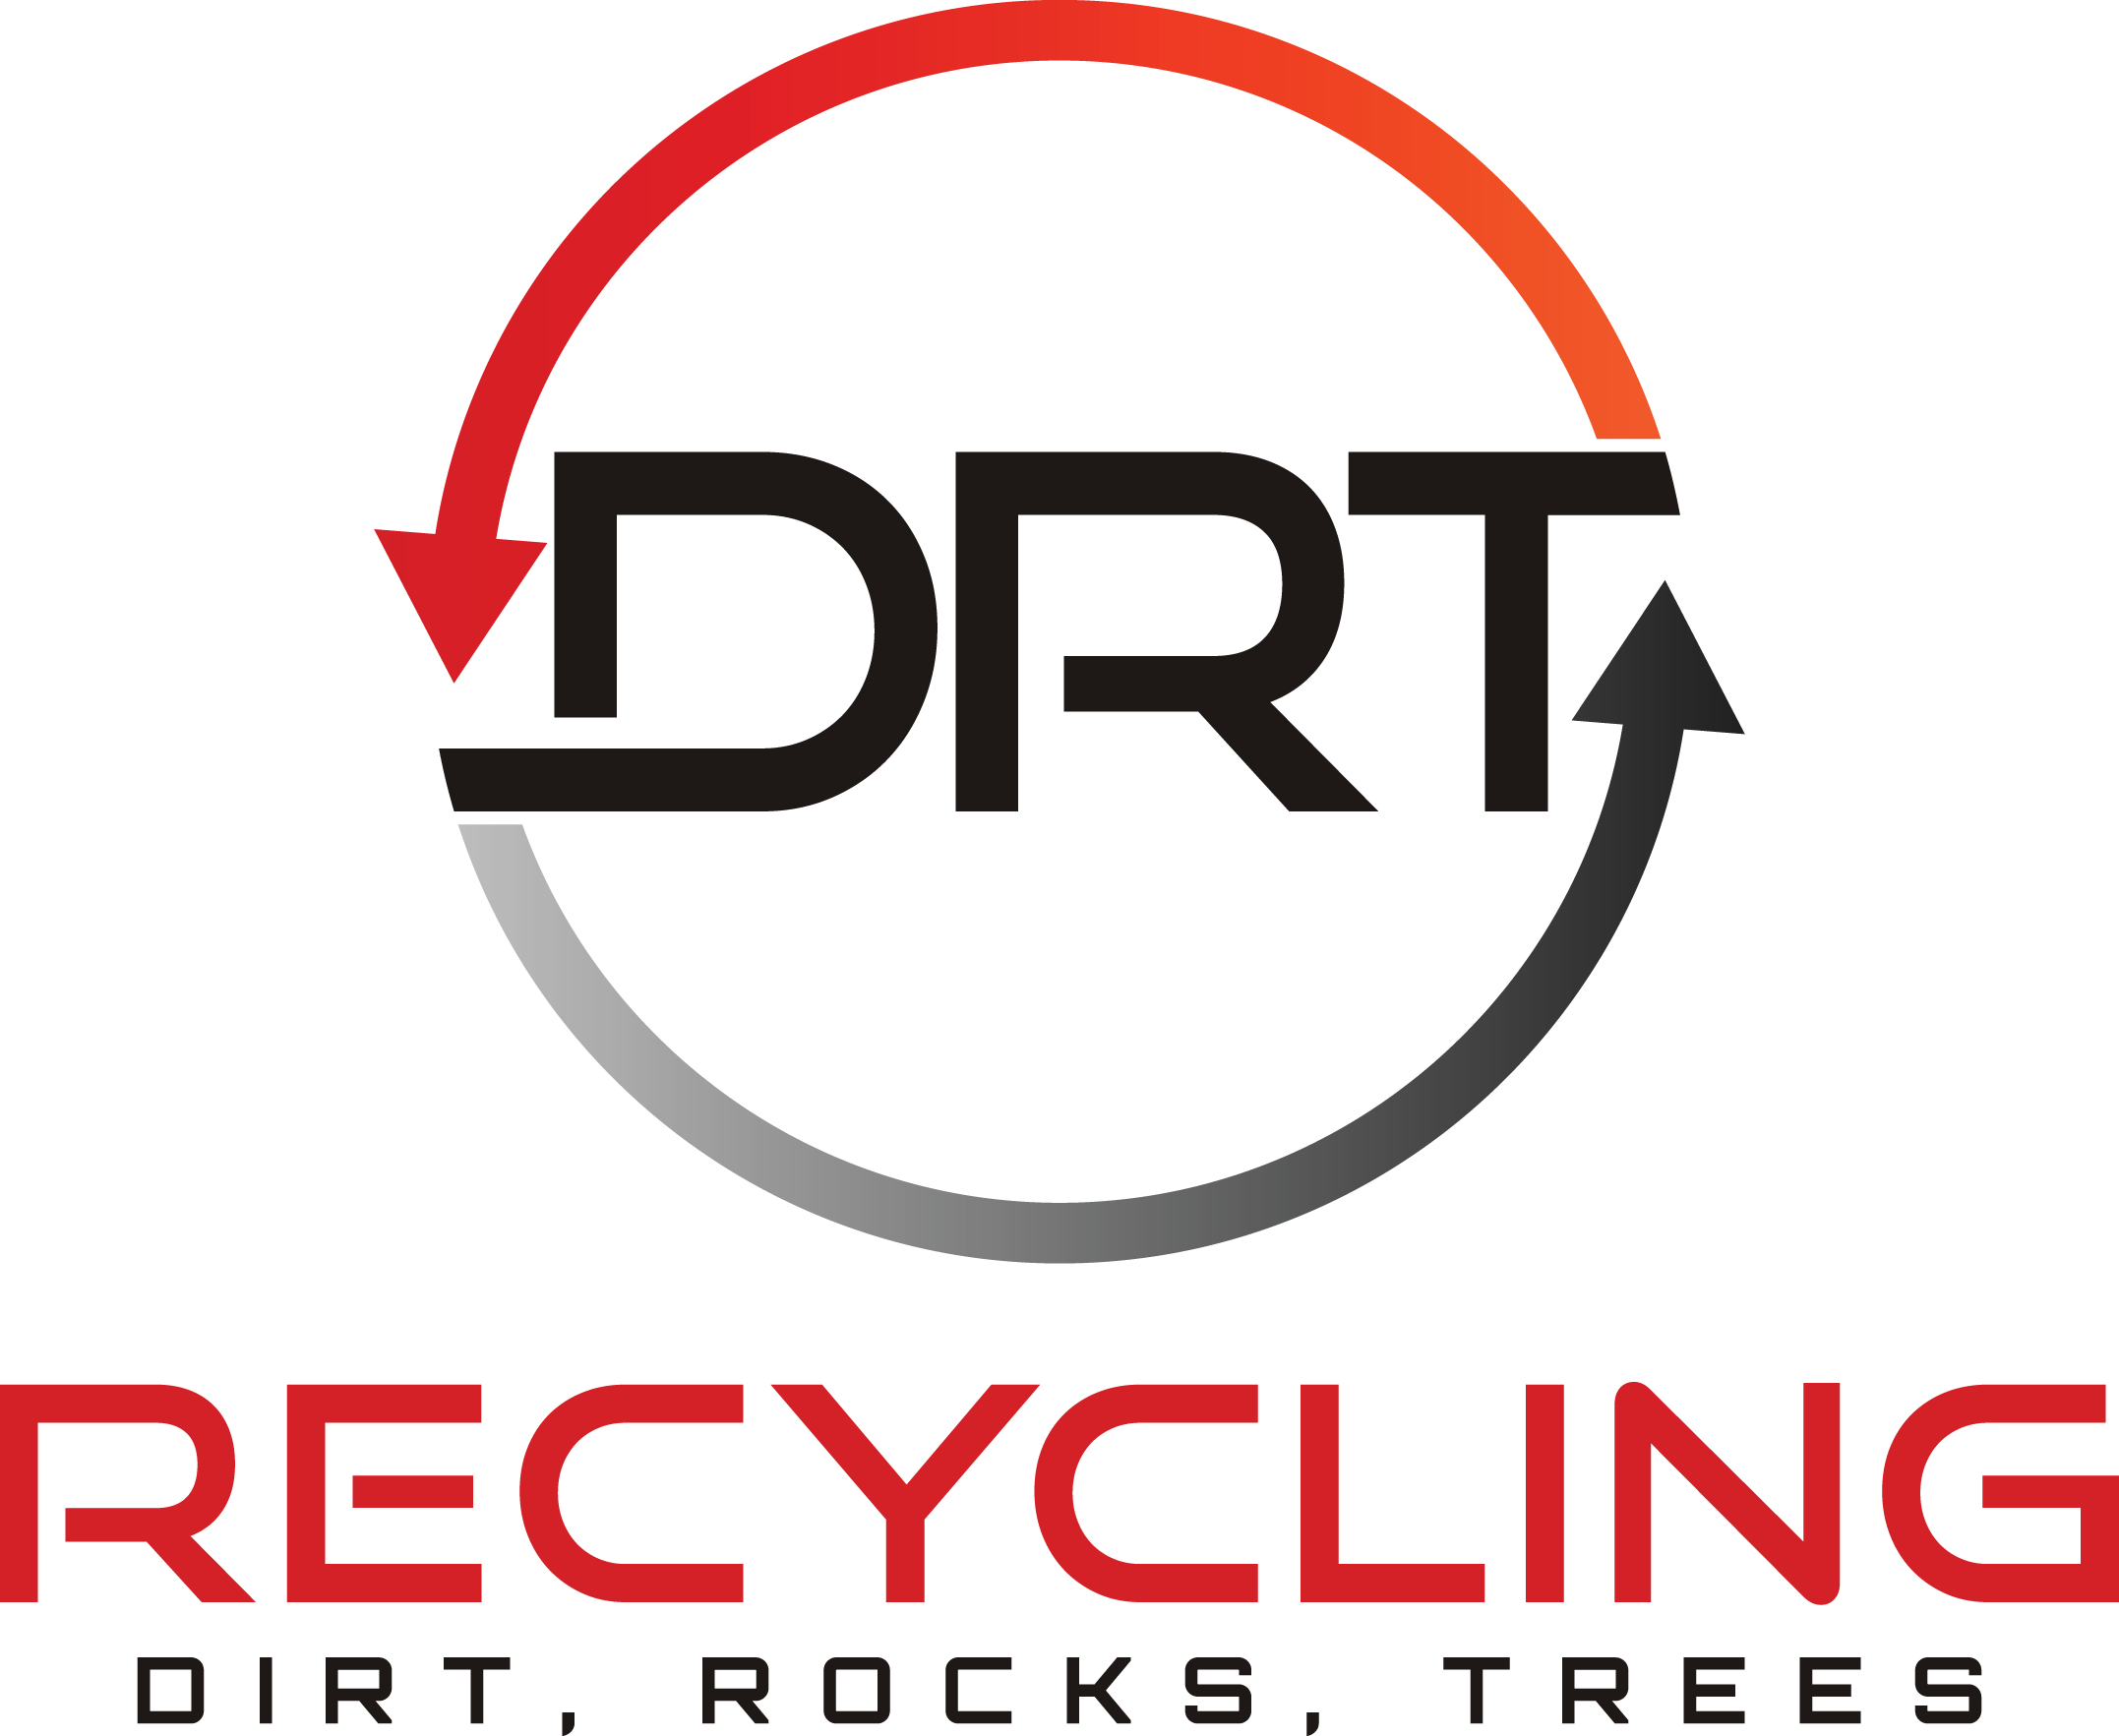 DRT Recycling